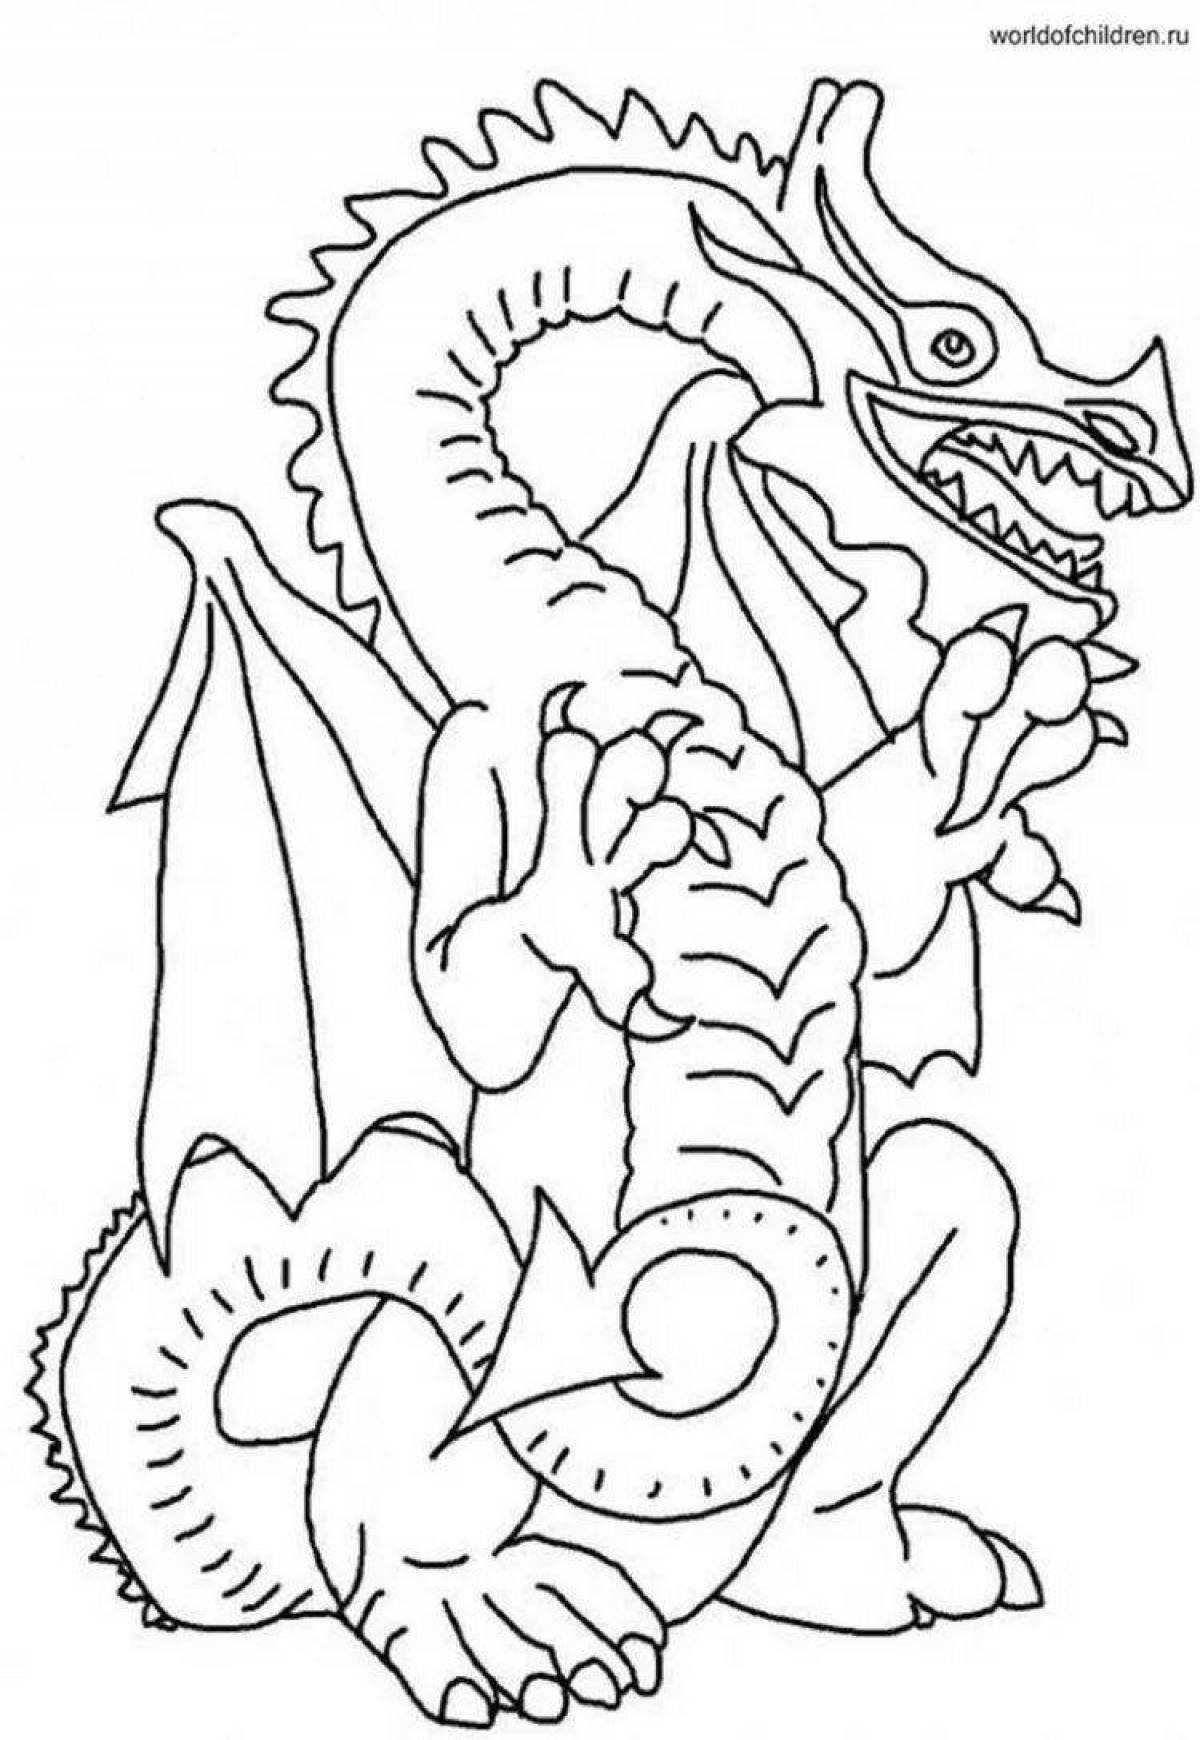 Восхитительная раскраска дракон для детей 7 лет